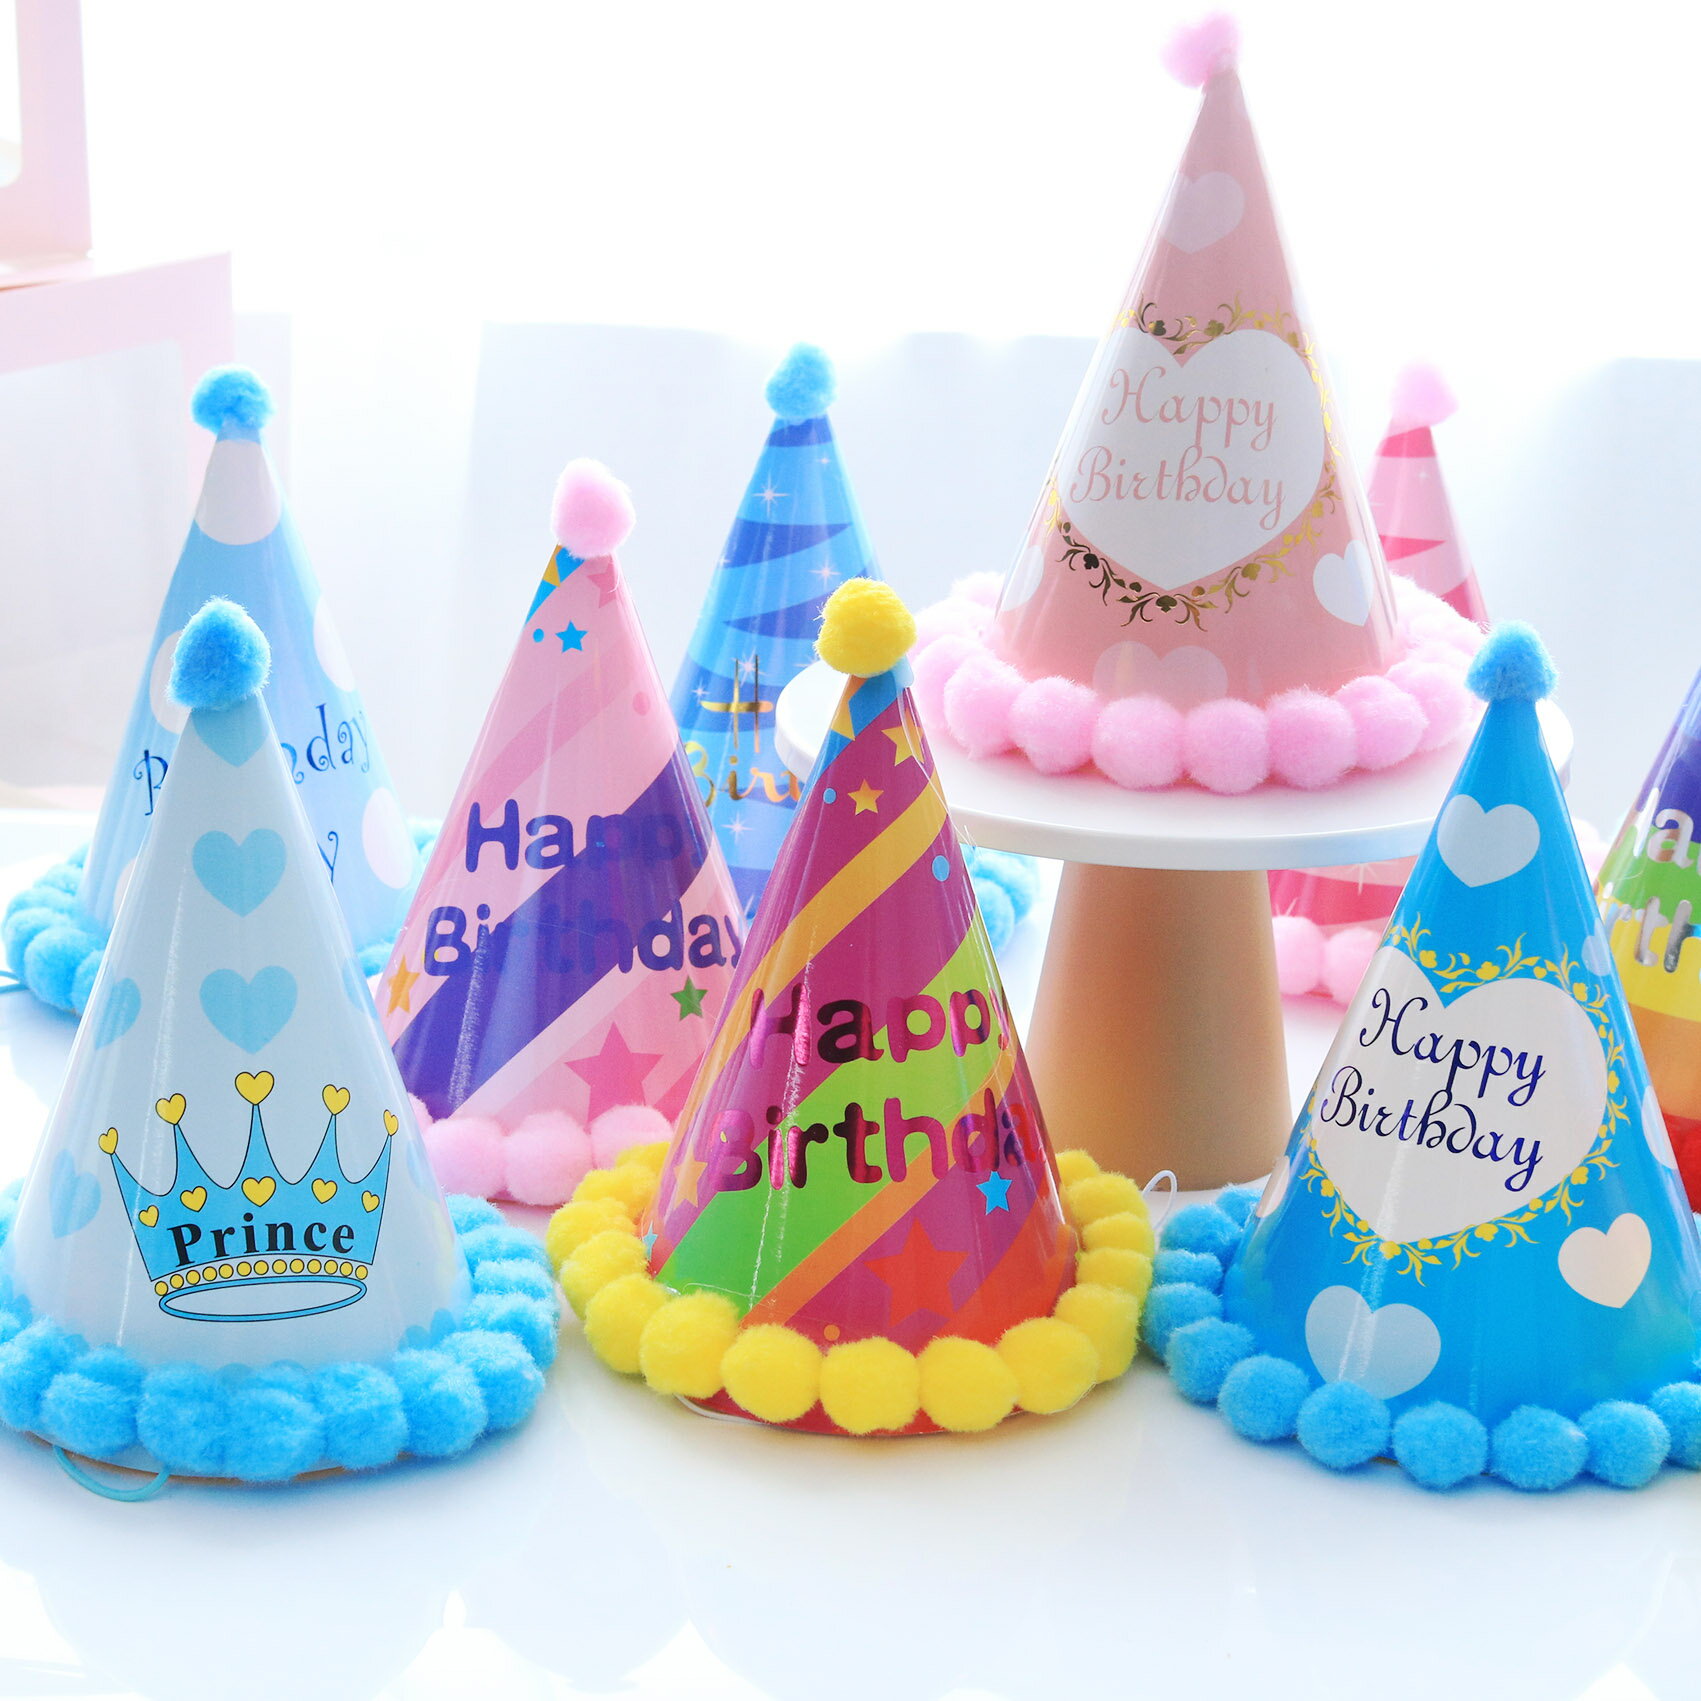 絨球生日帽發光皇冠帽寶寶周歲頭飾創意兒童生日派對裝飾布置用品